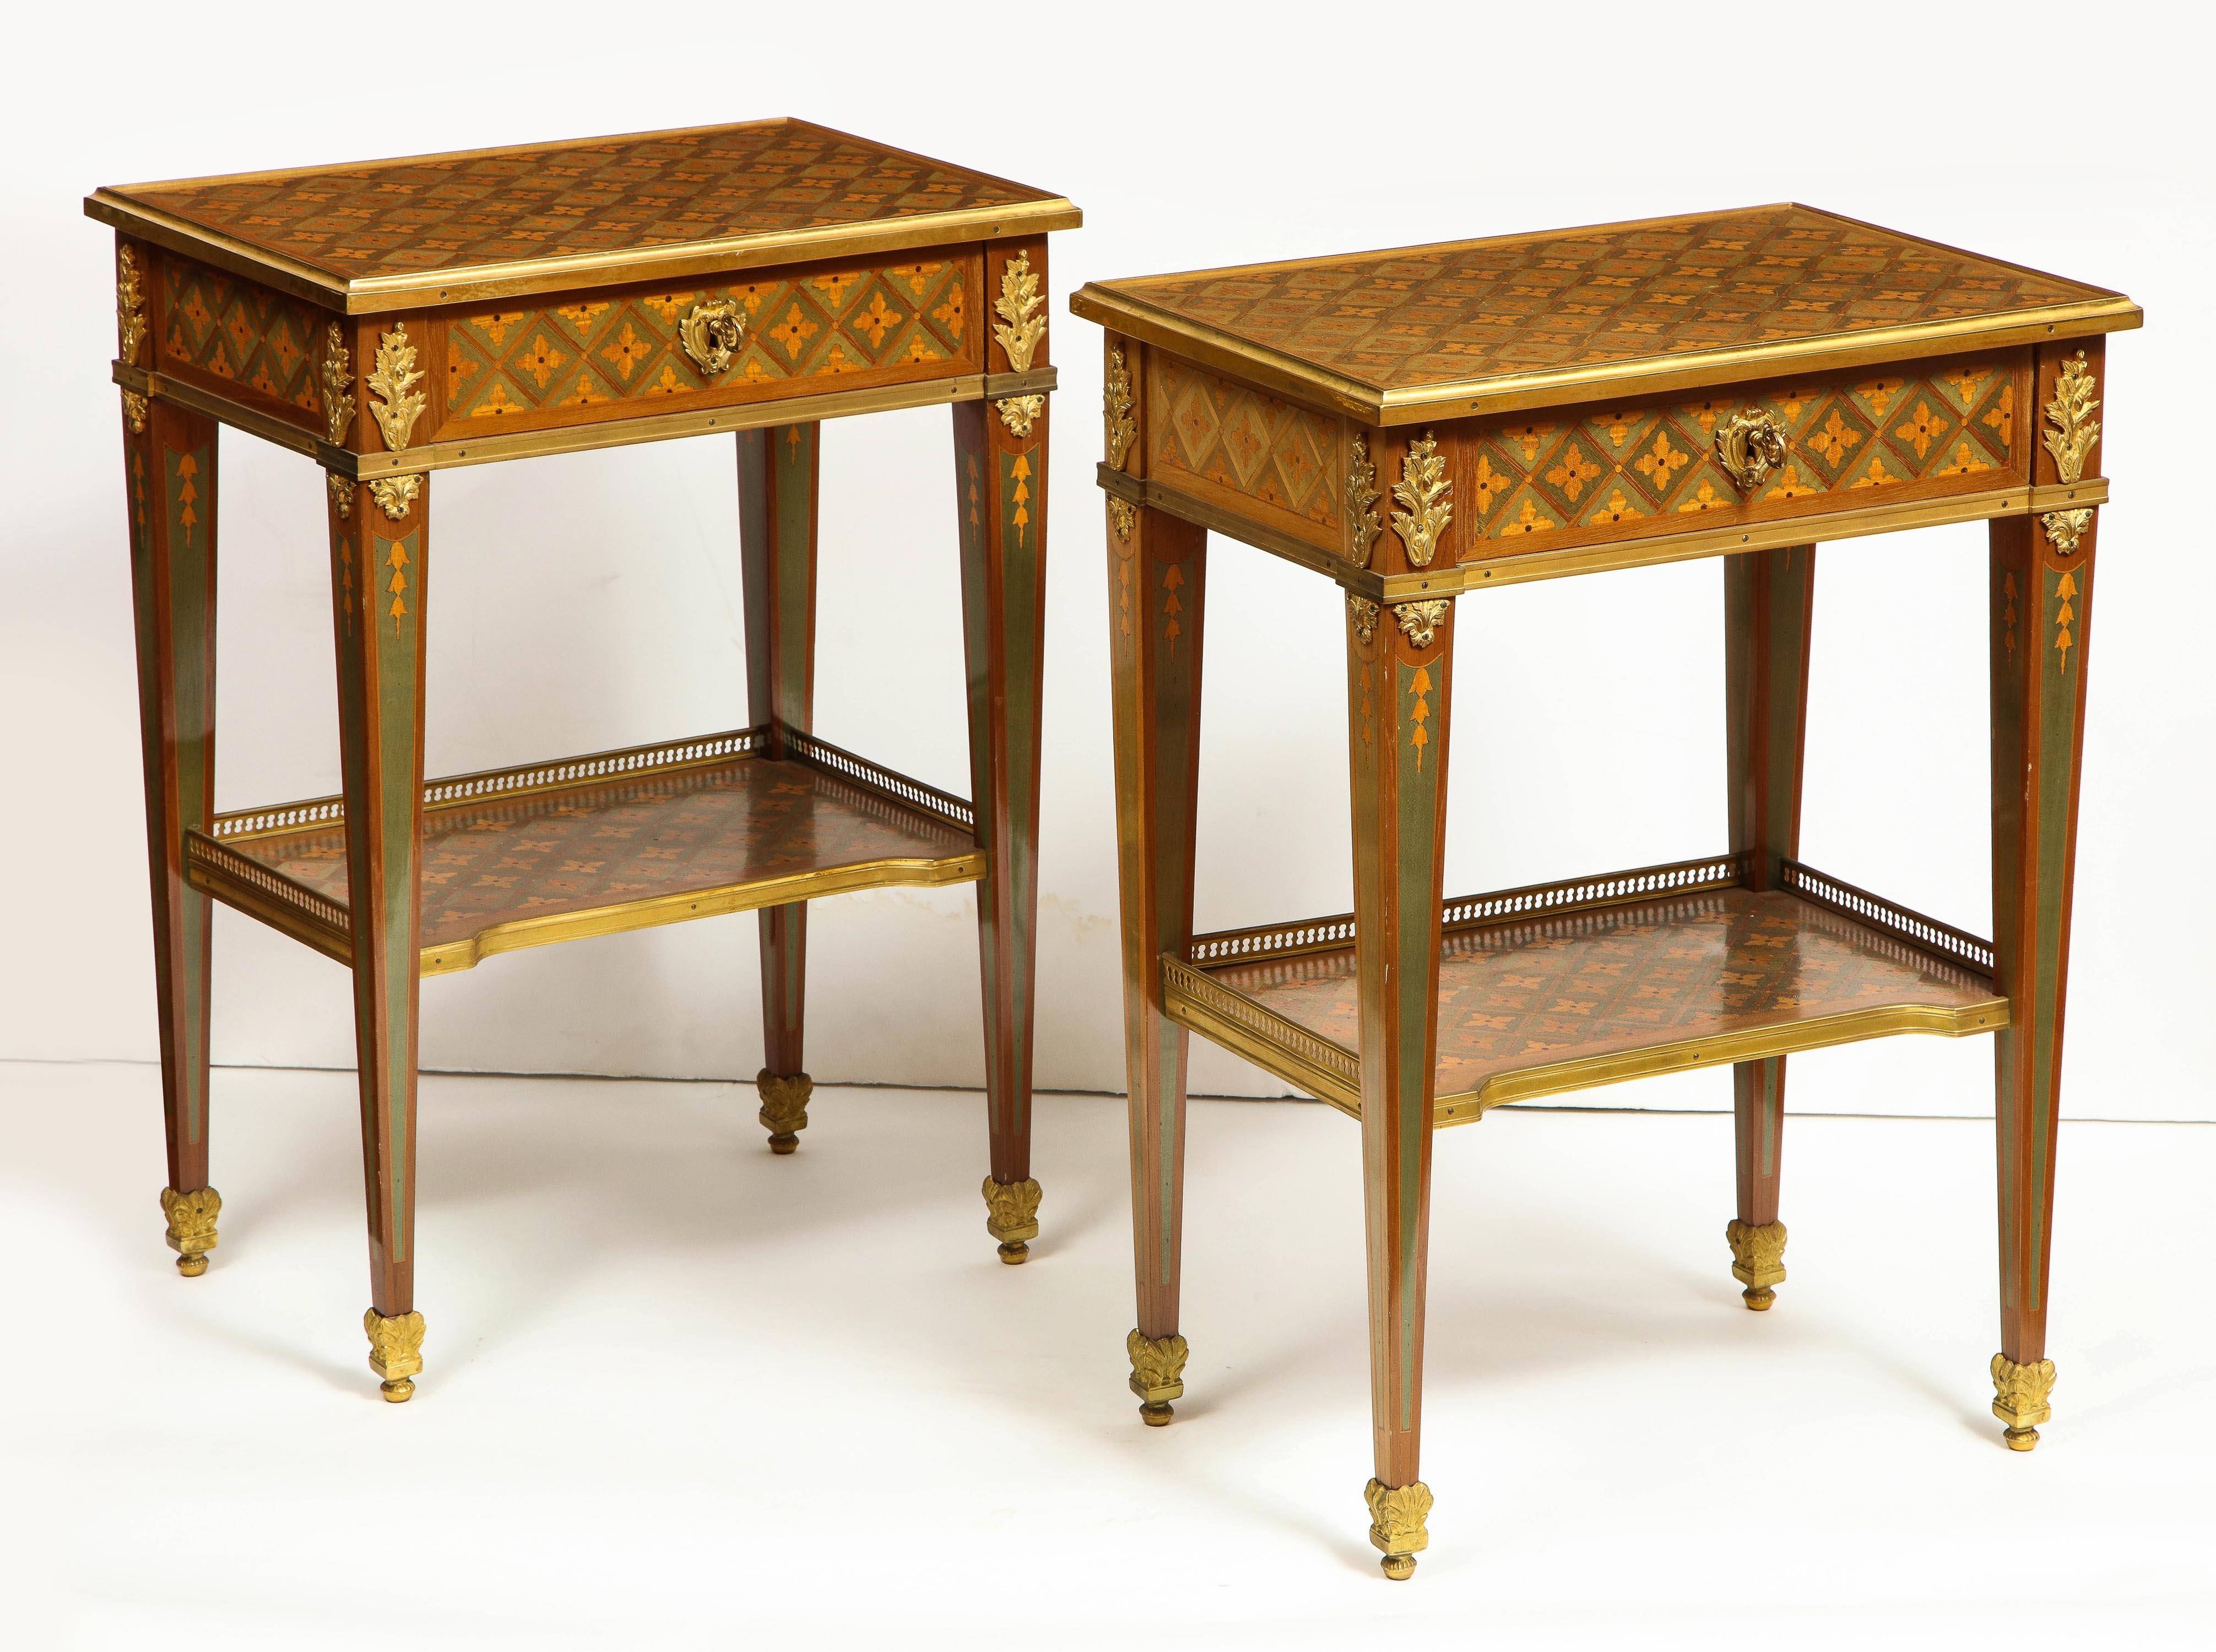 Exceptionnelle paire de tables d'appoint françaises de style Louis XVI en parquet et marqueterie montés sur bronze doré, fin 19e-début 20e siècle, dans la manière de RVLC.

Ces tables sont vraiment exceptionnelles et constituent de purs exemples